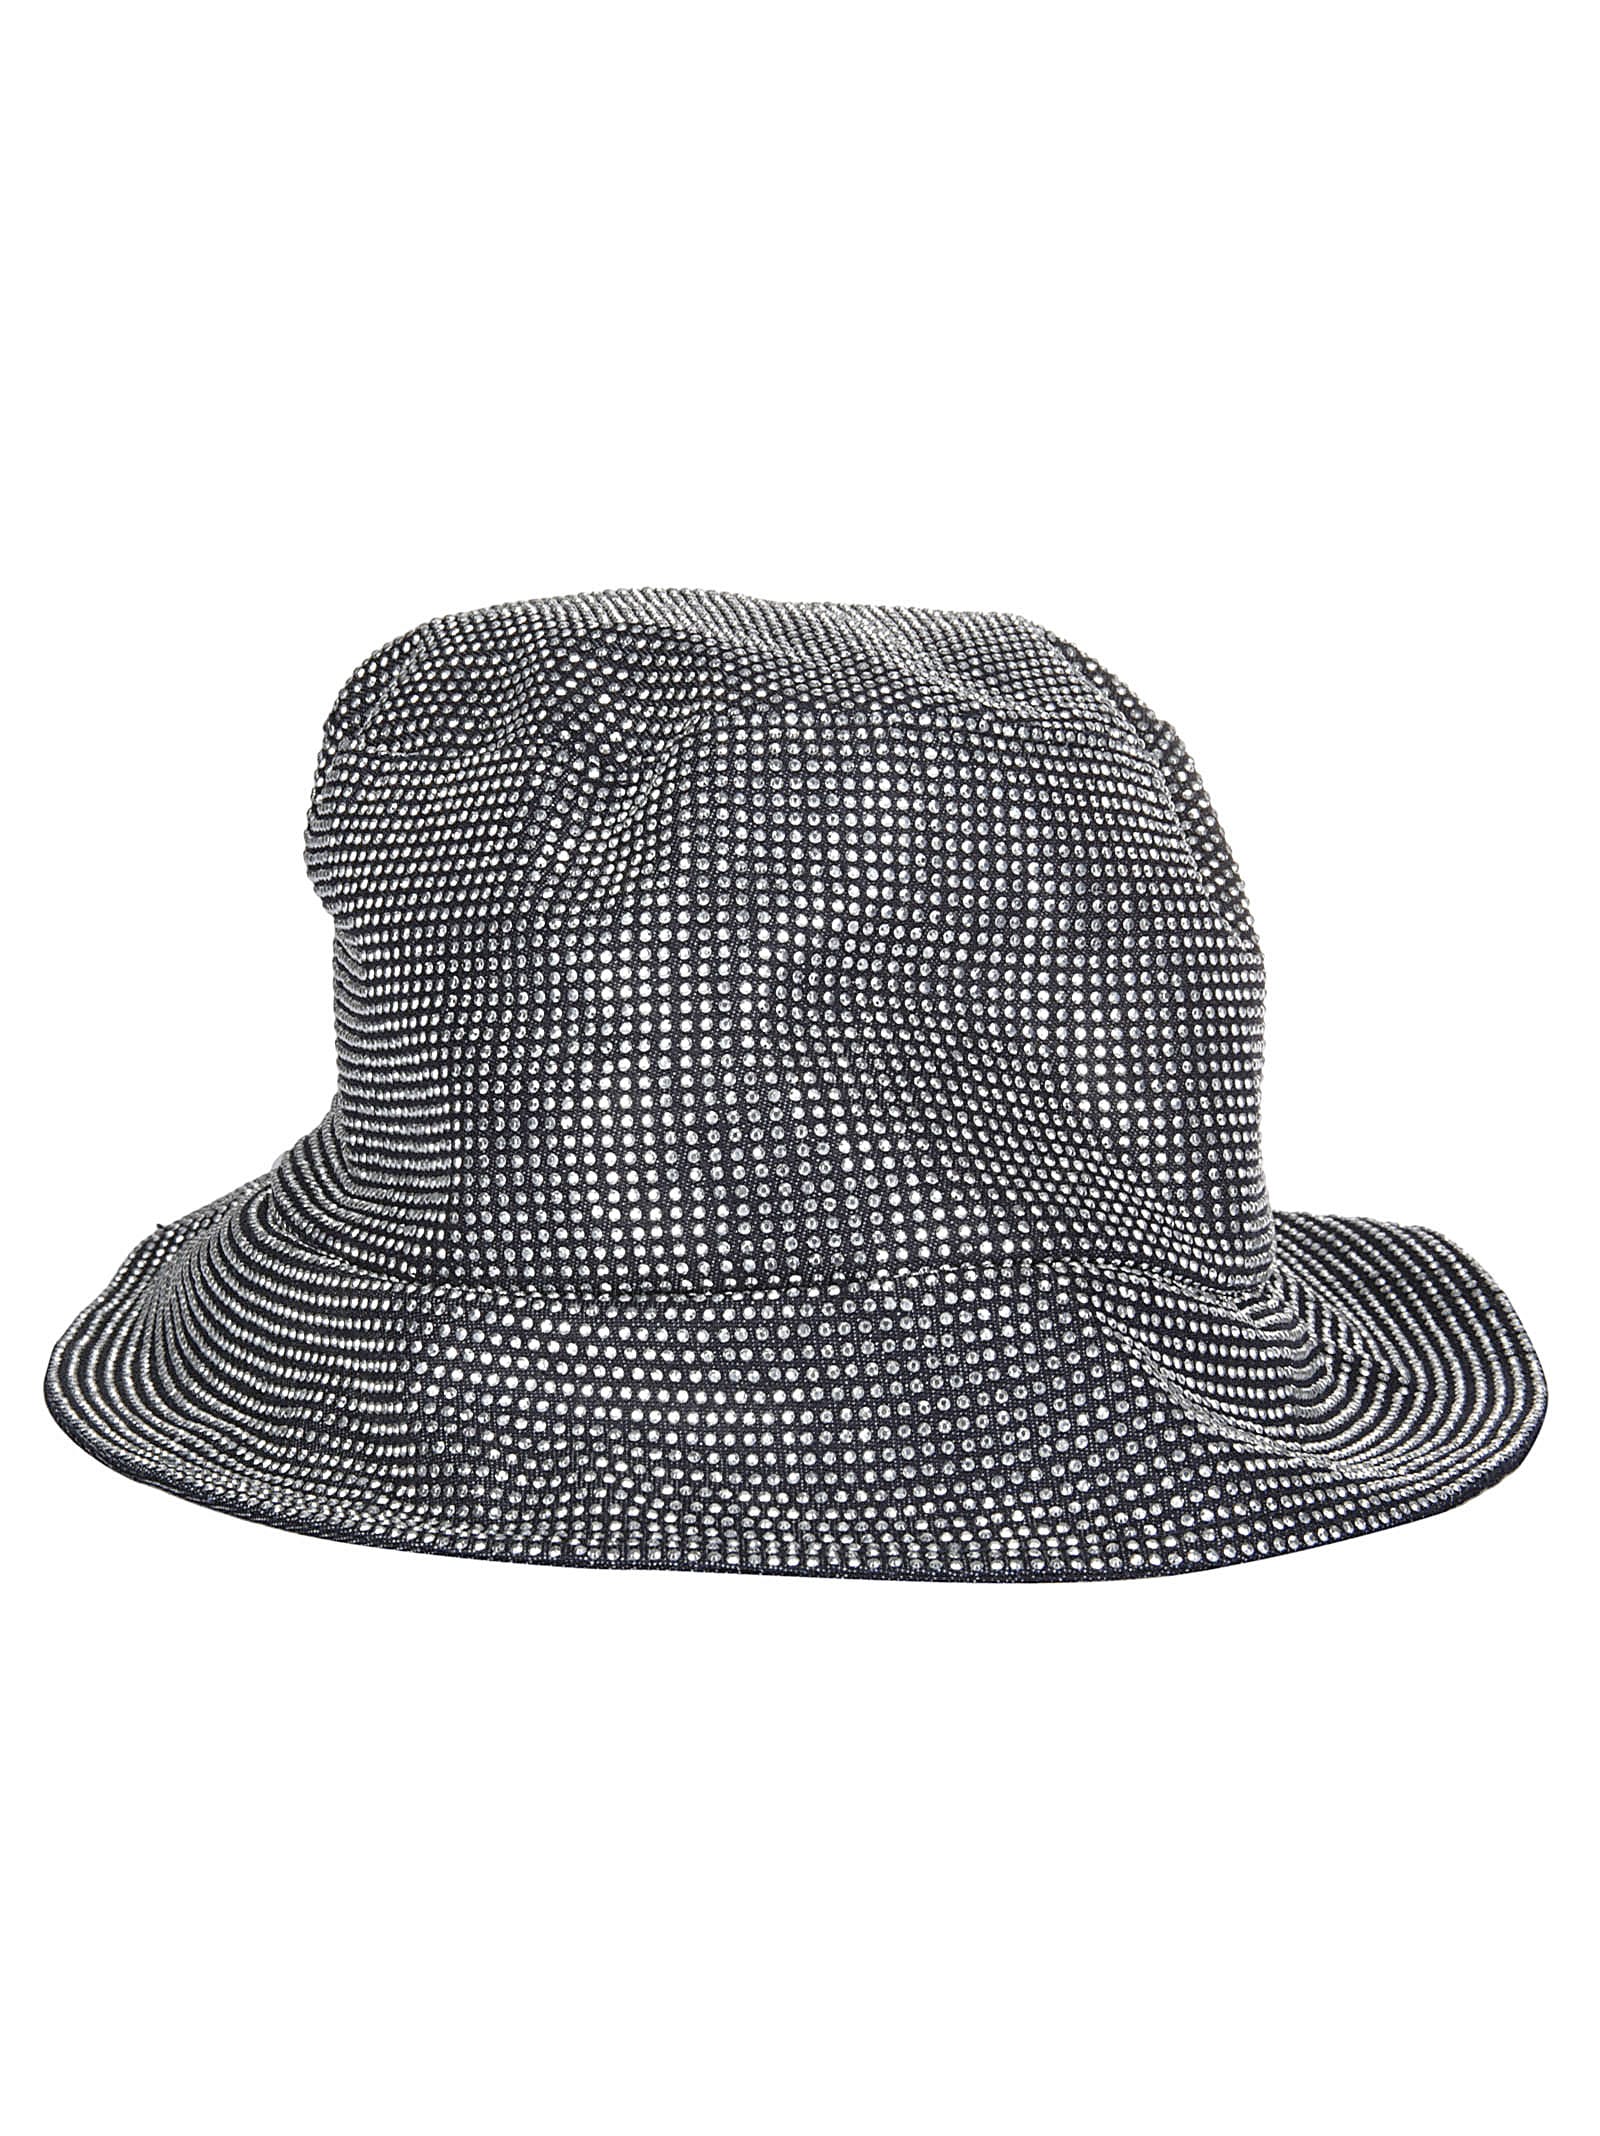 J.W. Anderson Bucket Hat